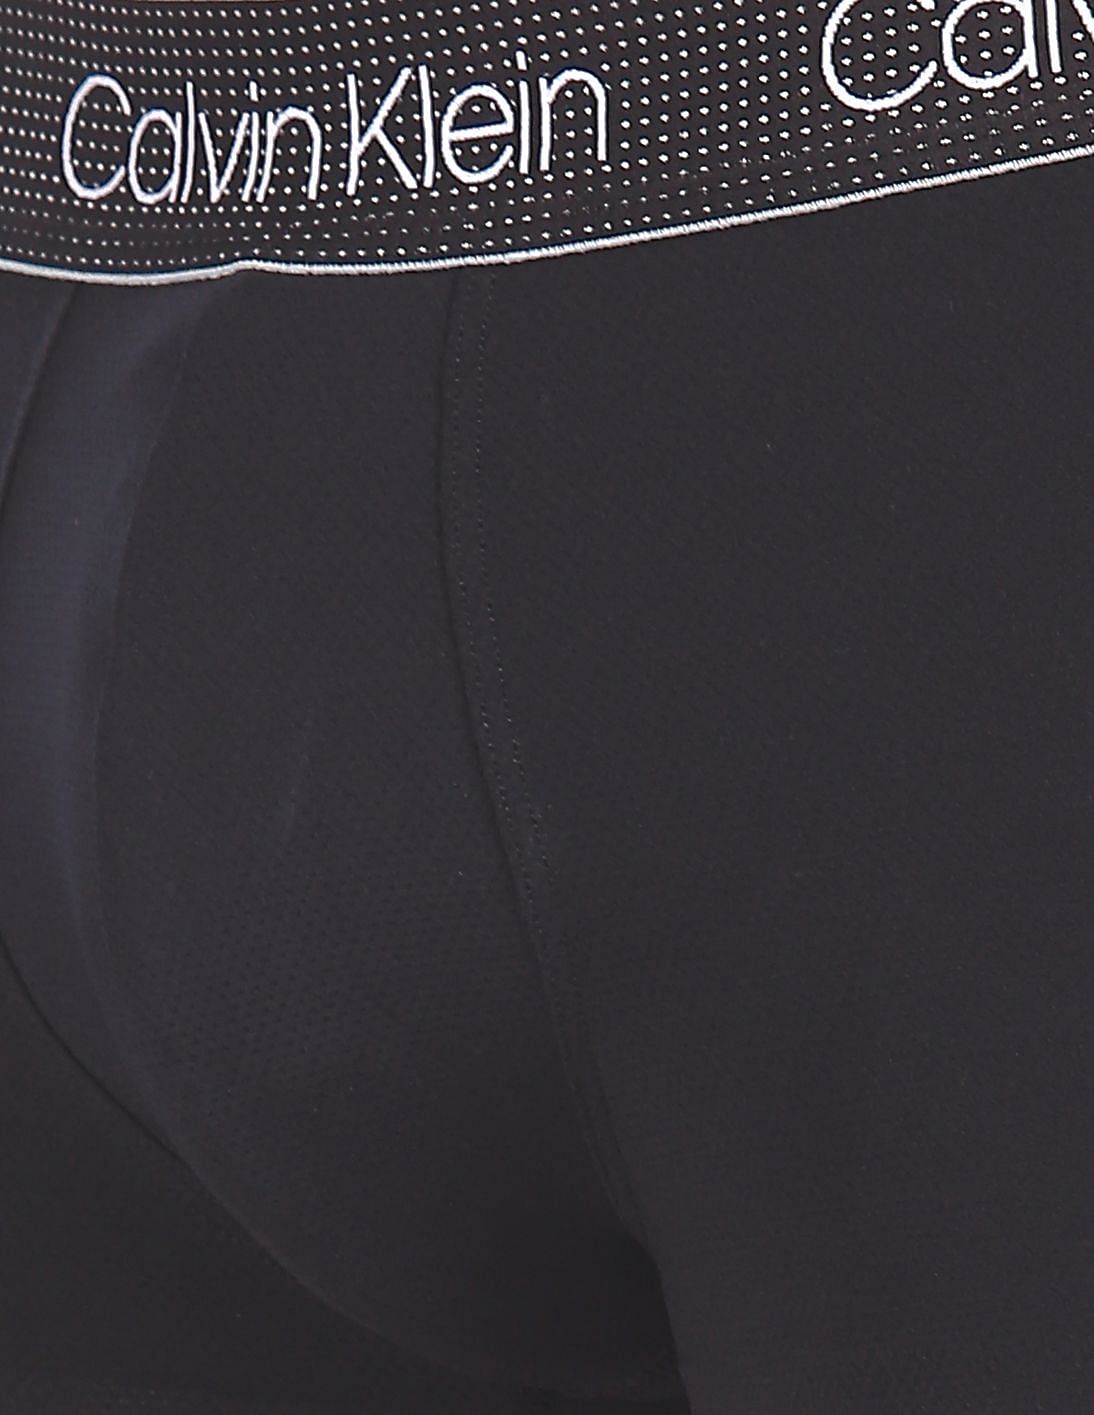 Buy Calvin Klein Underwear Men Black Elasticized Brand Waist Solid Trunks -  NNNOW.com